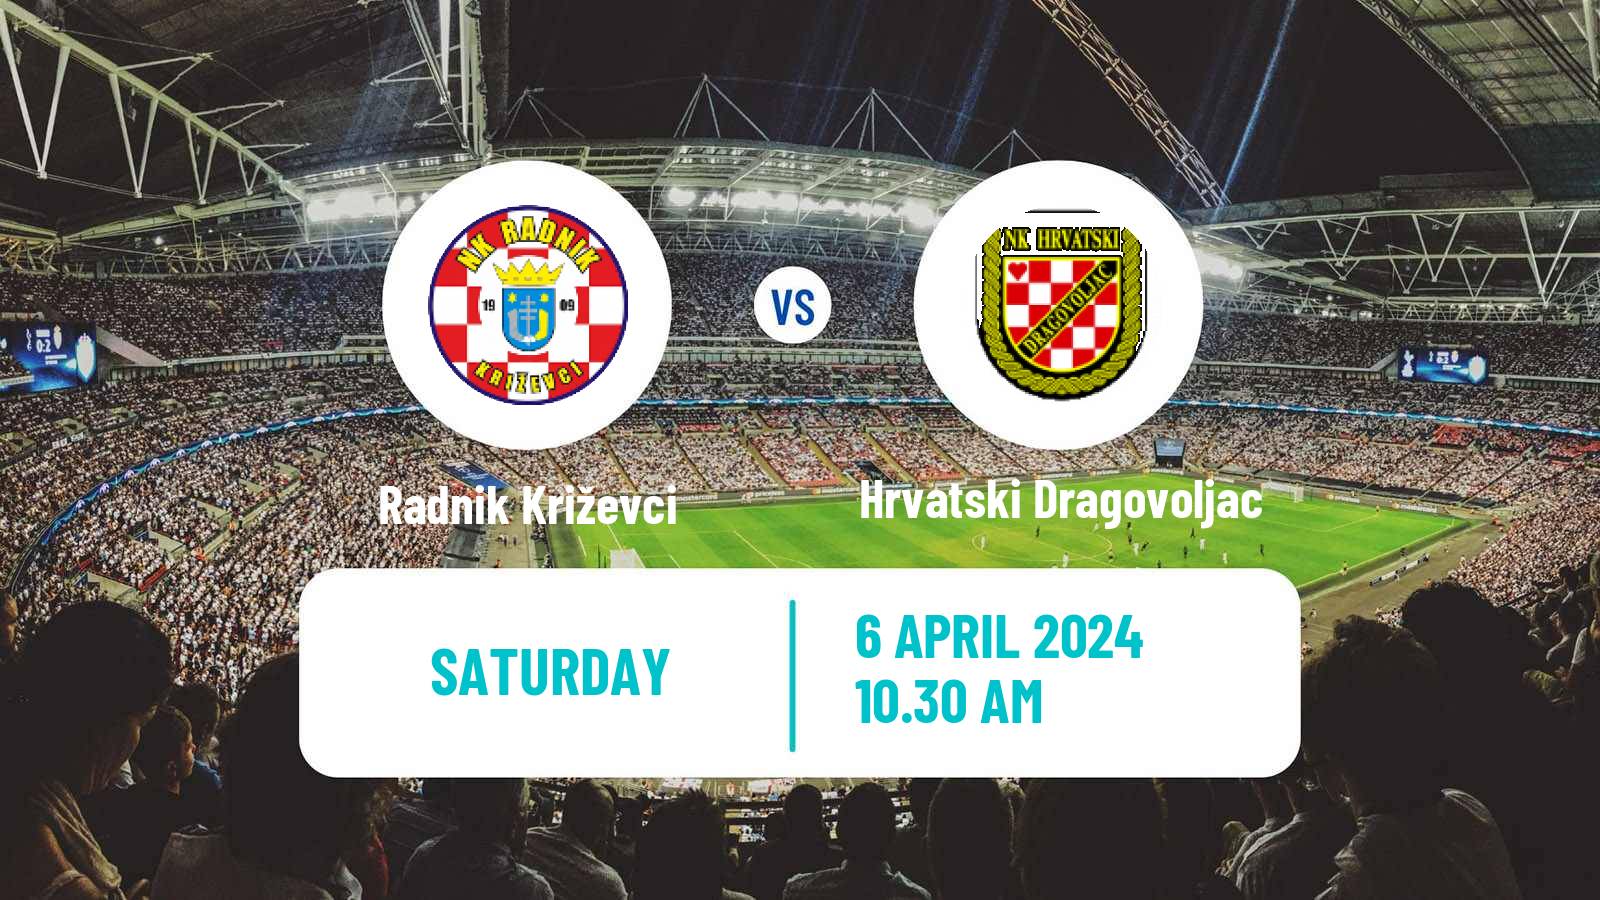 Soccer Croatian Druga NL Radnik Križevci - Hrvatski Dragovoljac